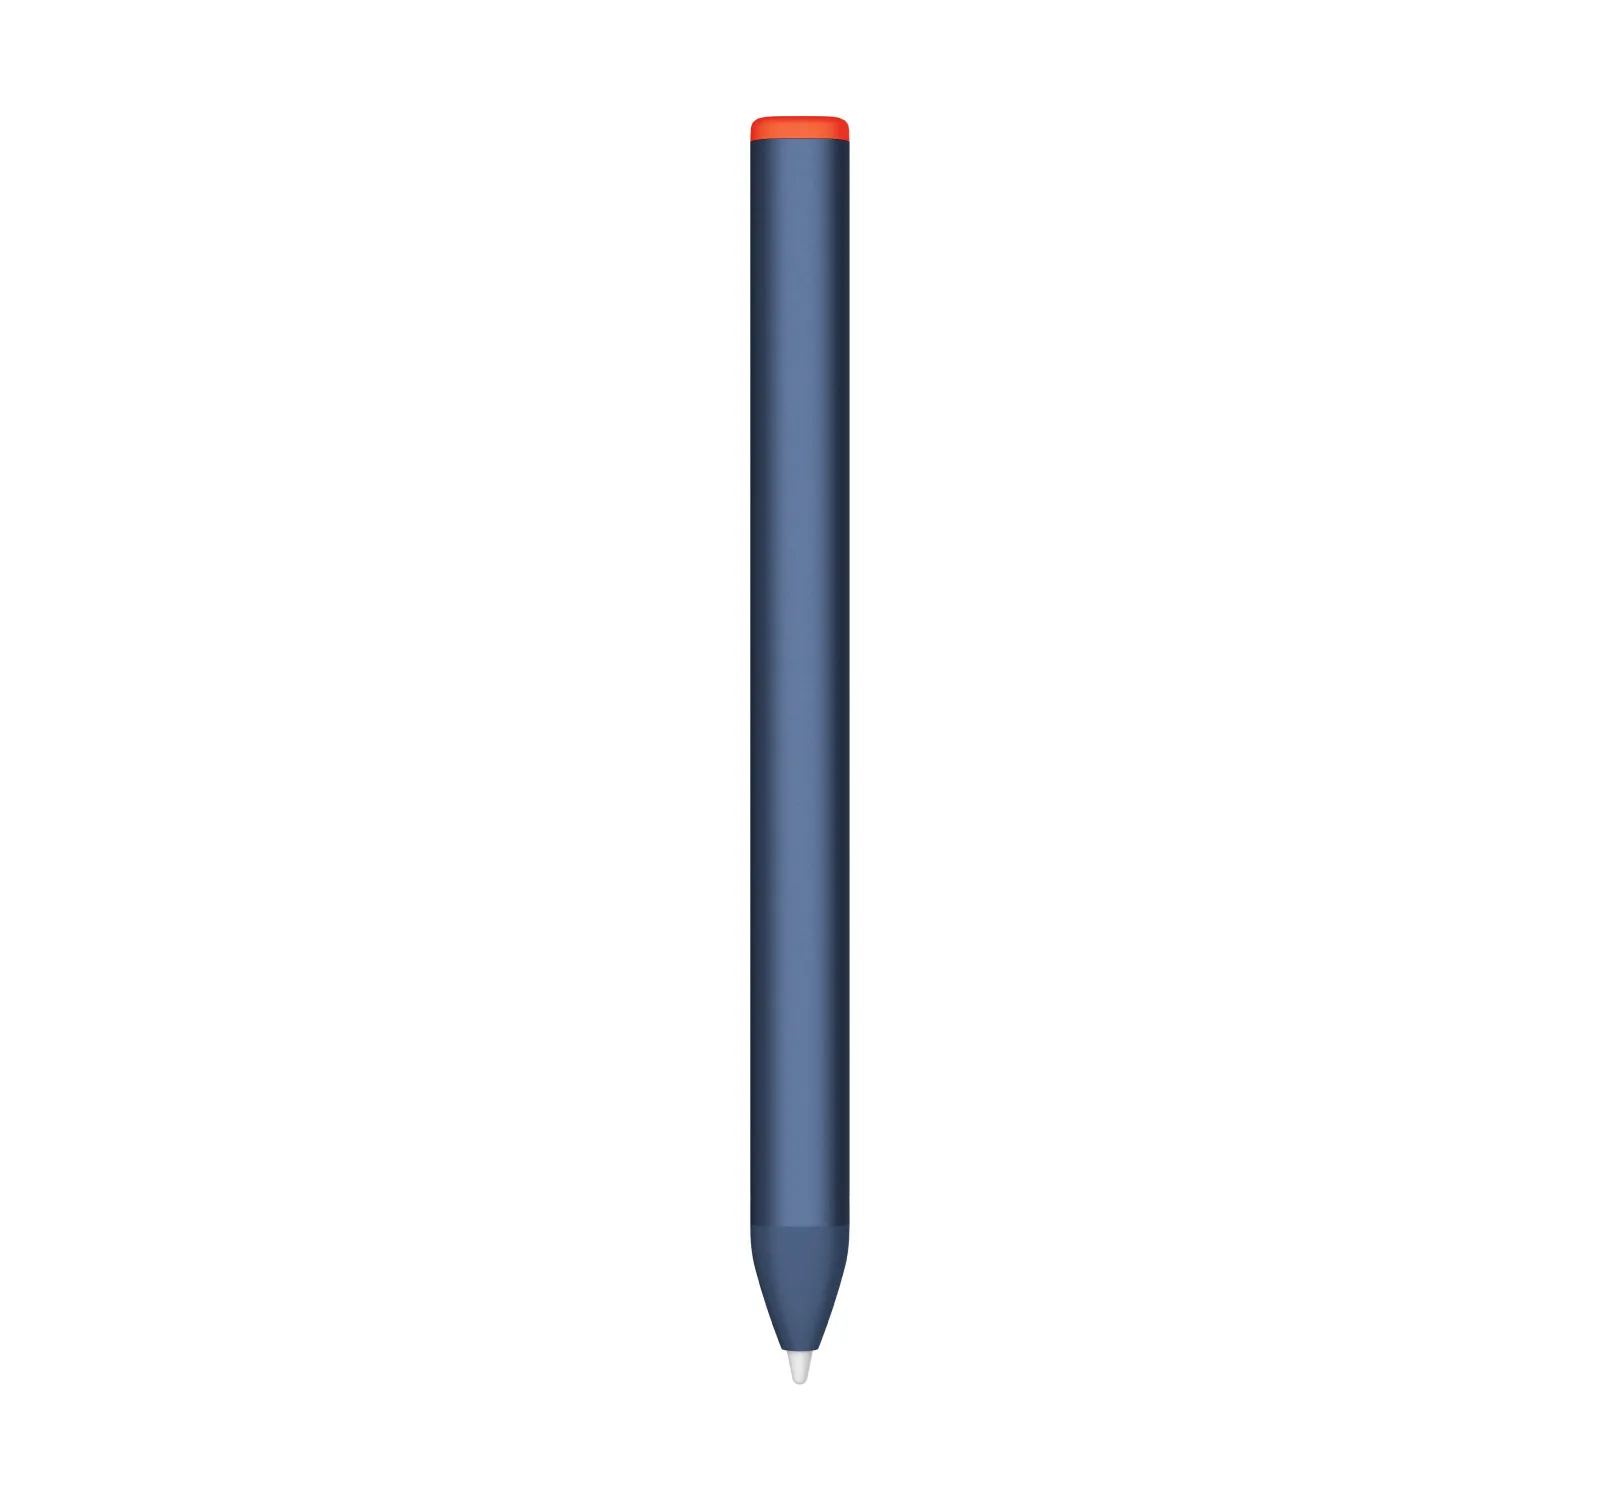 Achat LOGITECH Crayon for Education Digital pen wireless sur hello RSE - visuel 5